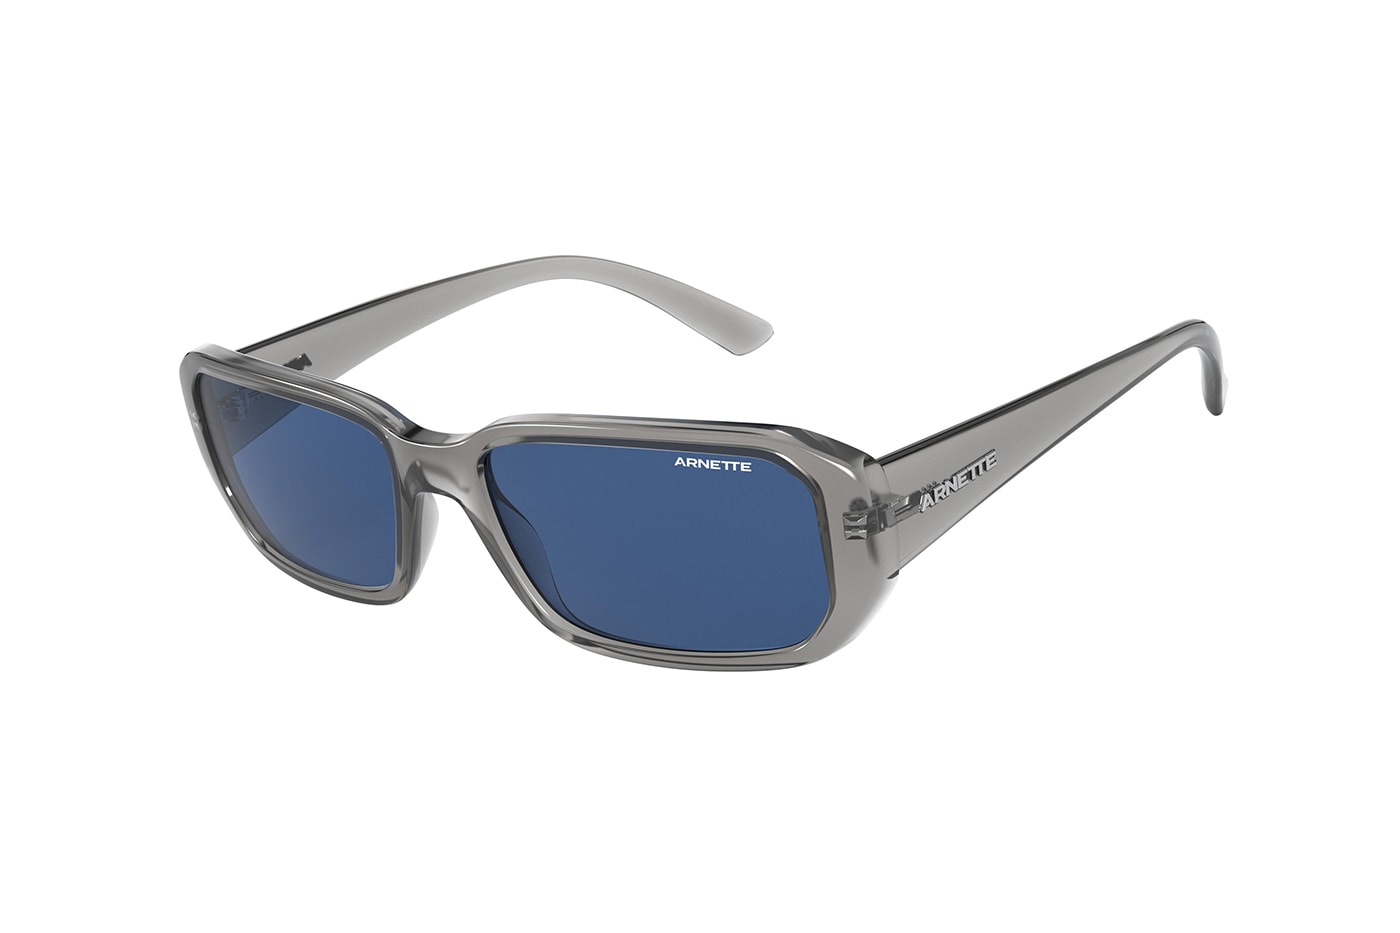 Post Malone Arnette Signature Collection Sunglasses Release AN 4265 Black White Grey Orange